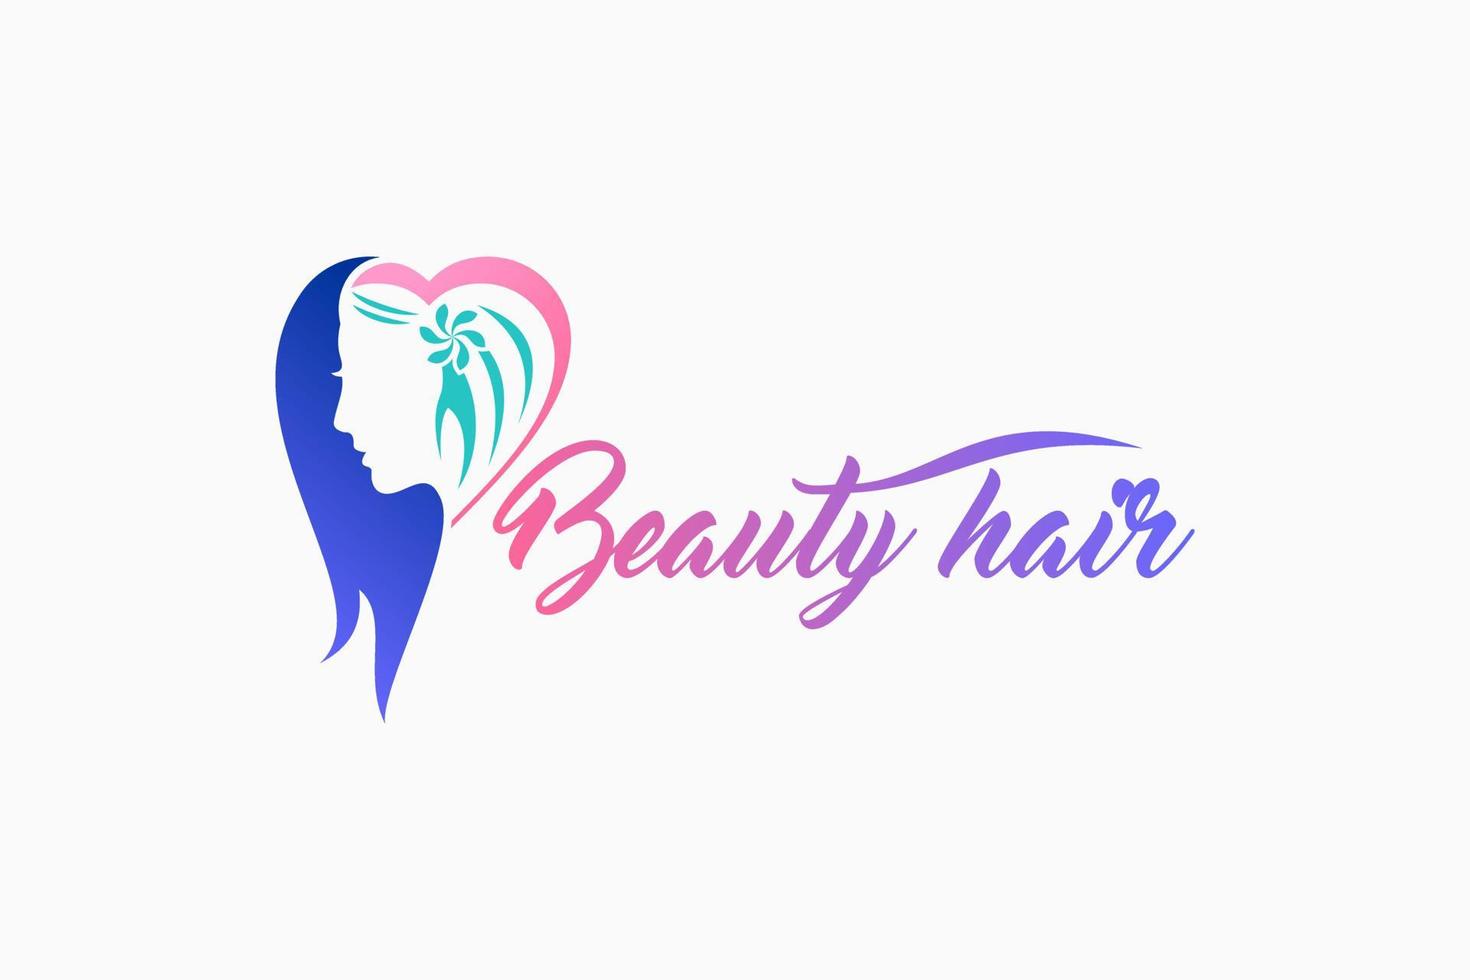 création de logo de beauté, de salon ou de soins capillaires avec le visage d'une femme dans un concept créatif dessiné à la main vecteur